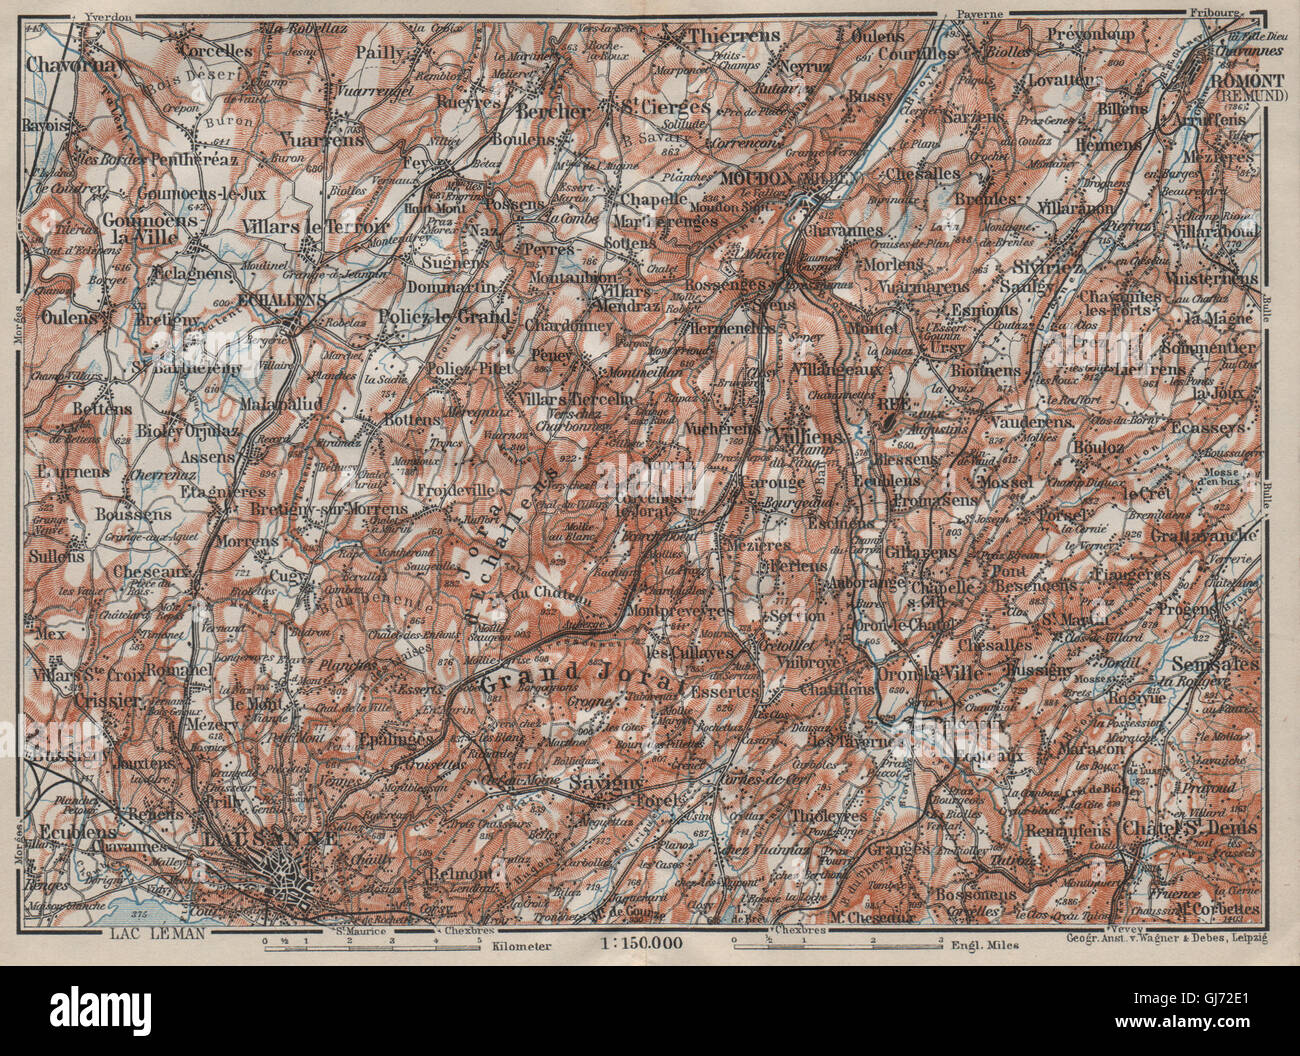 PAYS DE VAUD North. Lausanne Moudon Romont Jorat Moudon Echallens, 1911 map Stock Photo